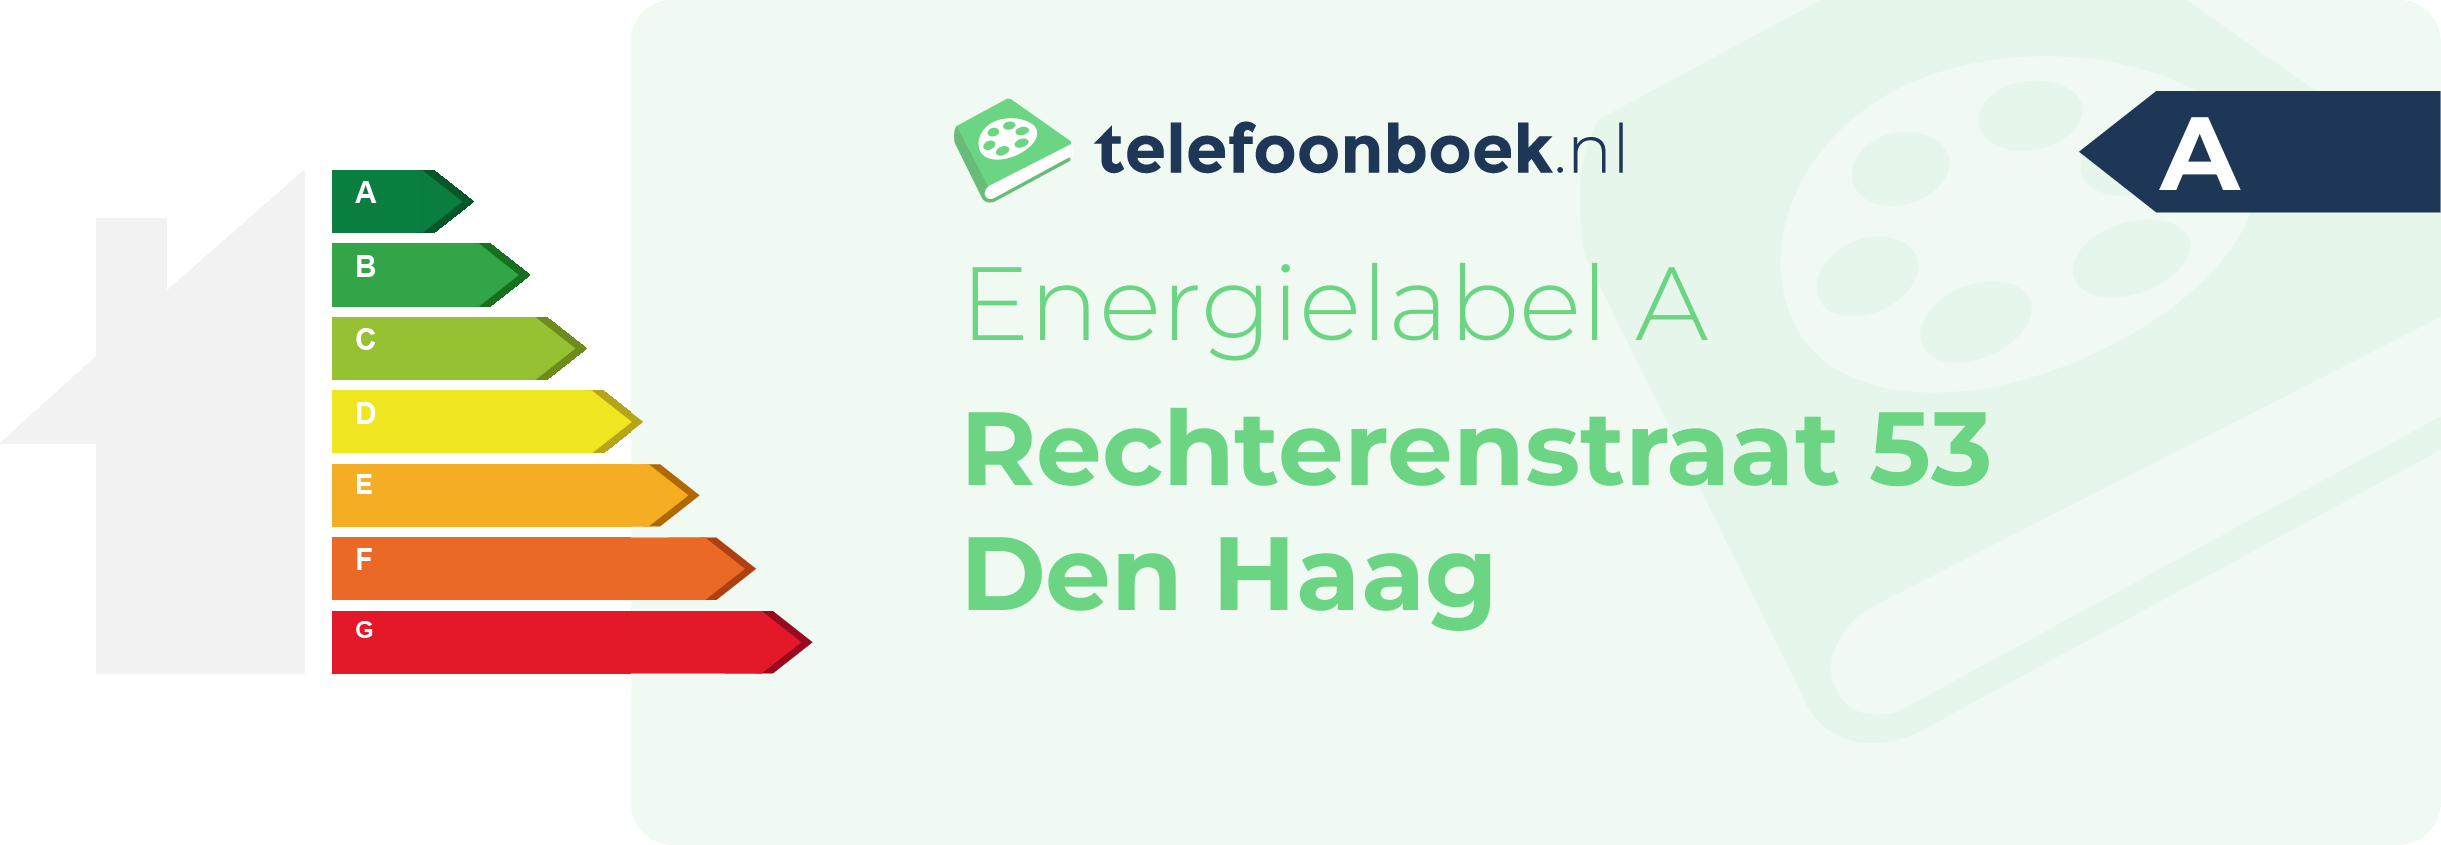 Energielabel Rechterenstraat 53 Den Haag